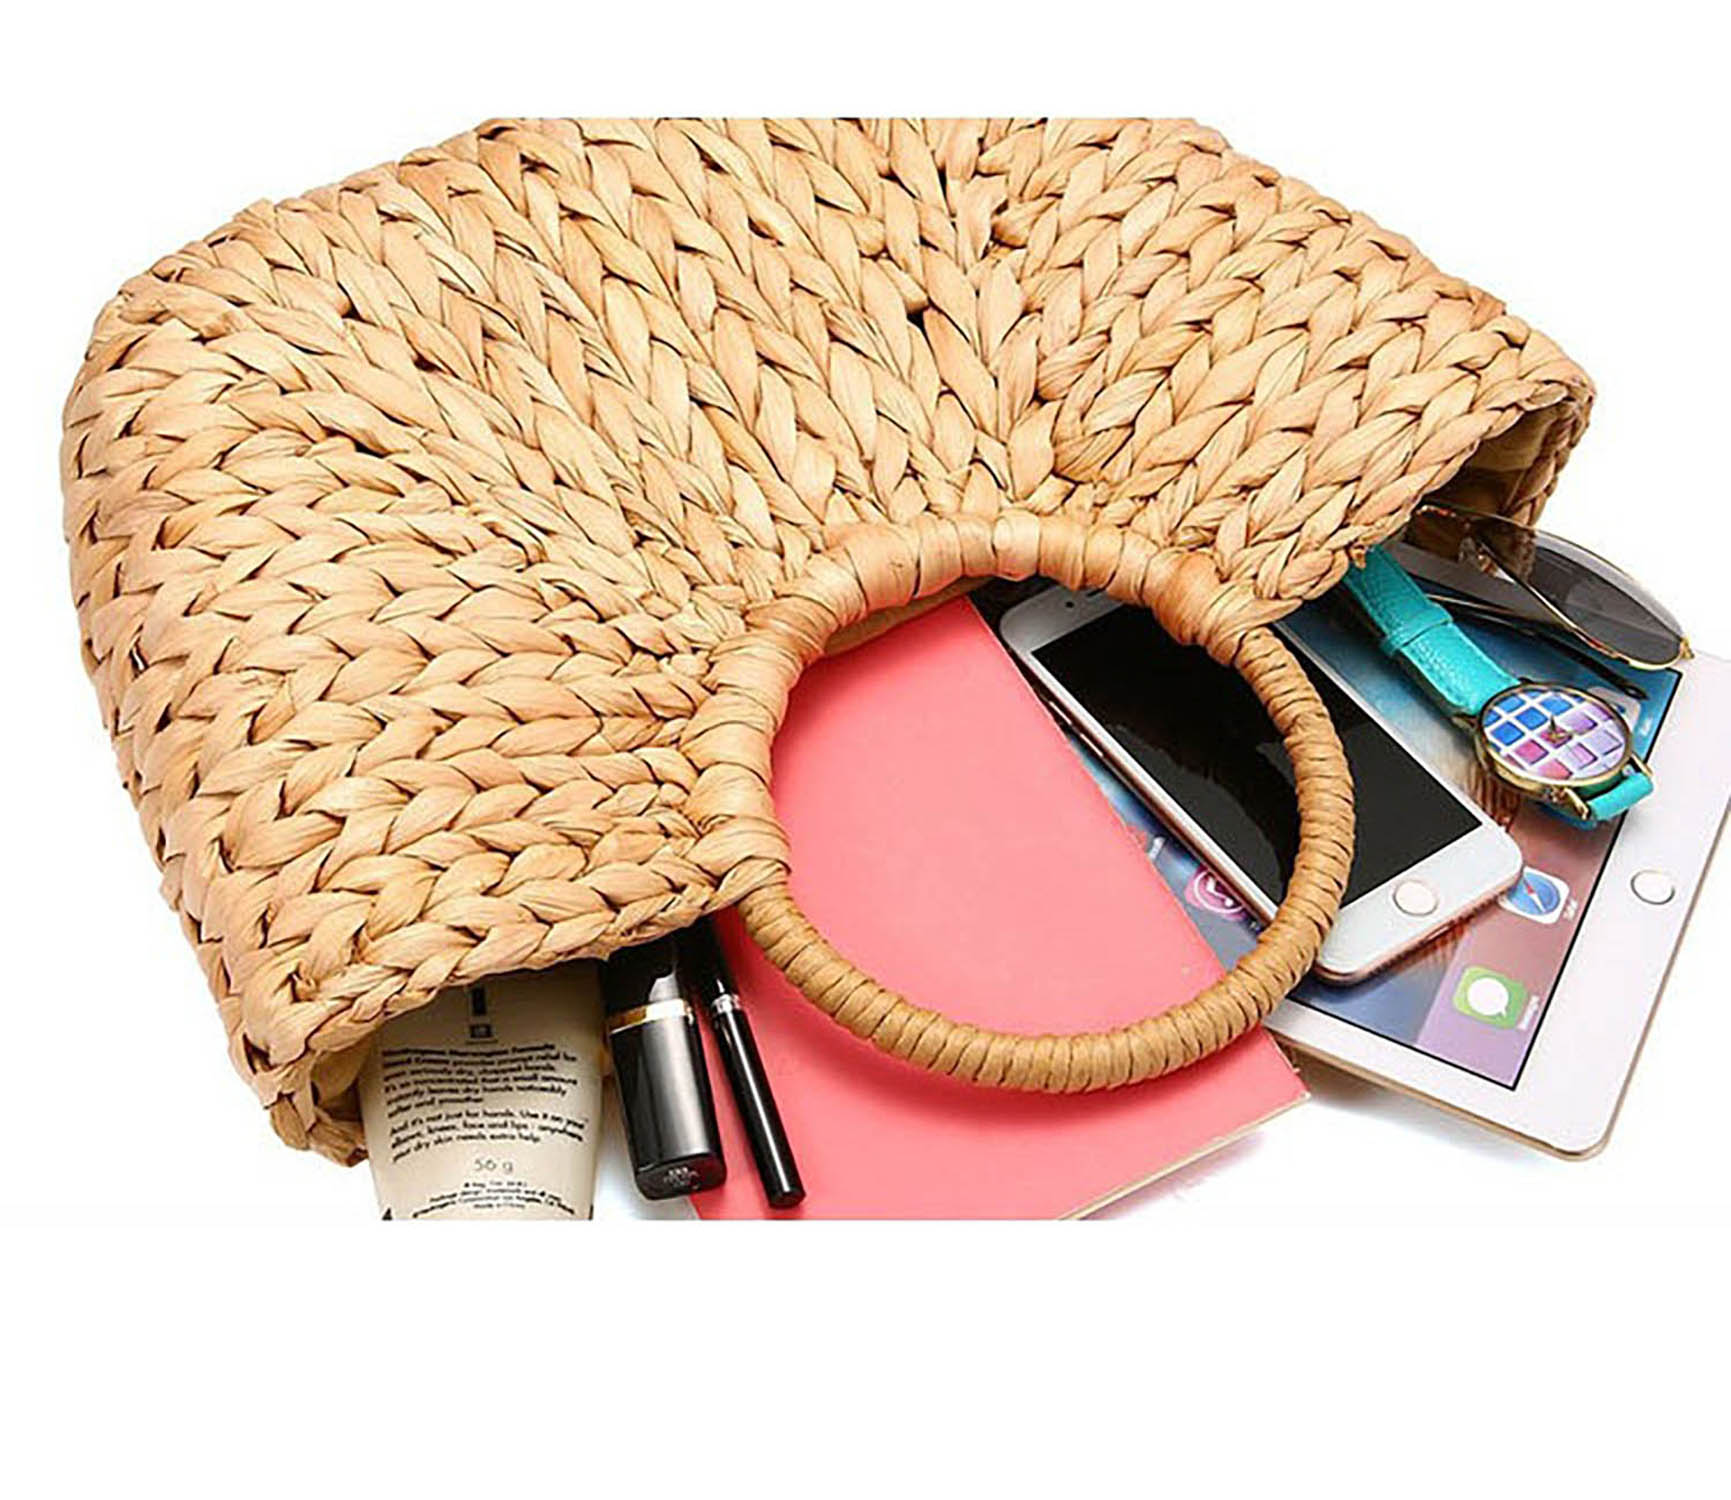 Handtasche Strandtasche Shopper Korbtasche geflochten Halbrund gewebt mit praktischem Zugband